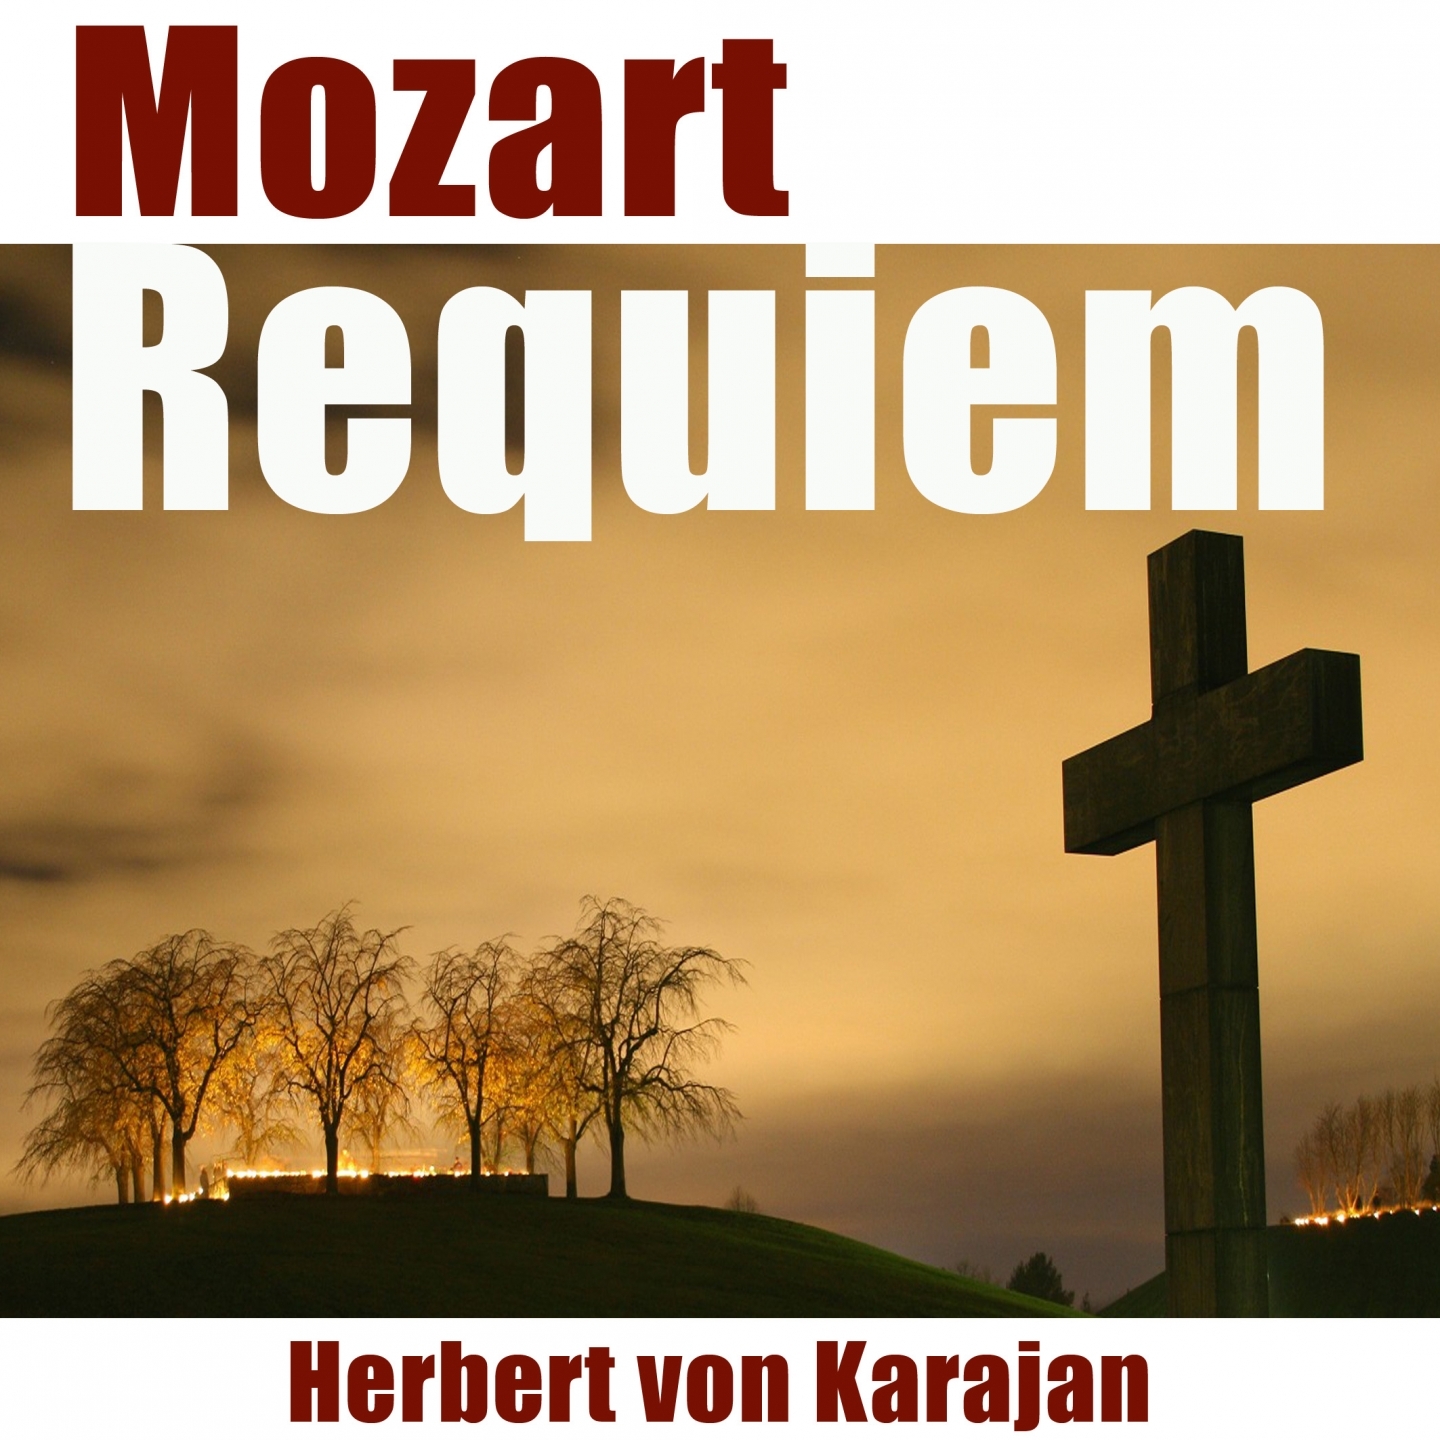 Requiem in D Minor, K. 626: Communio - Lux æterna, Adagio